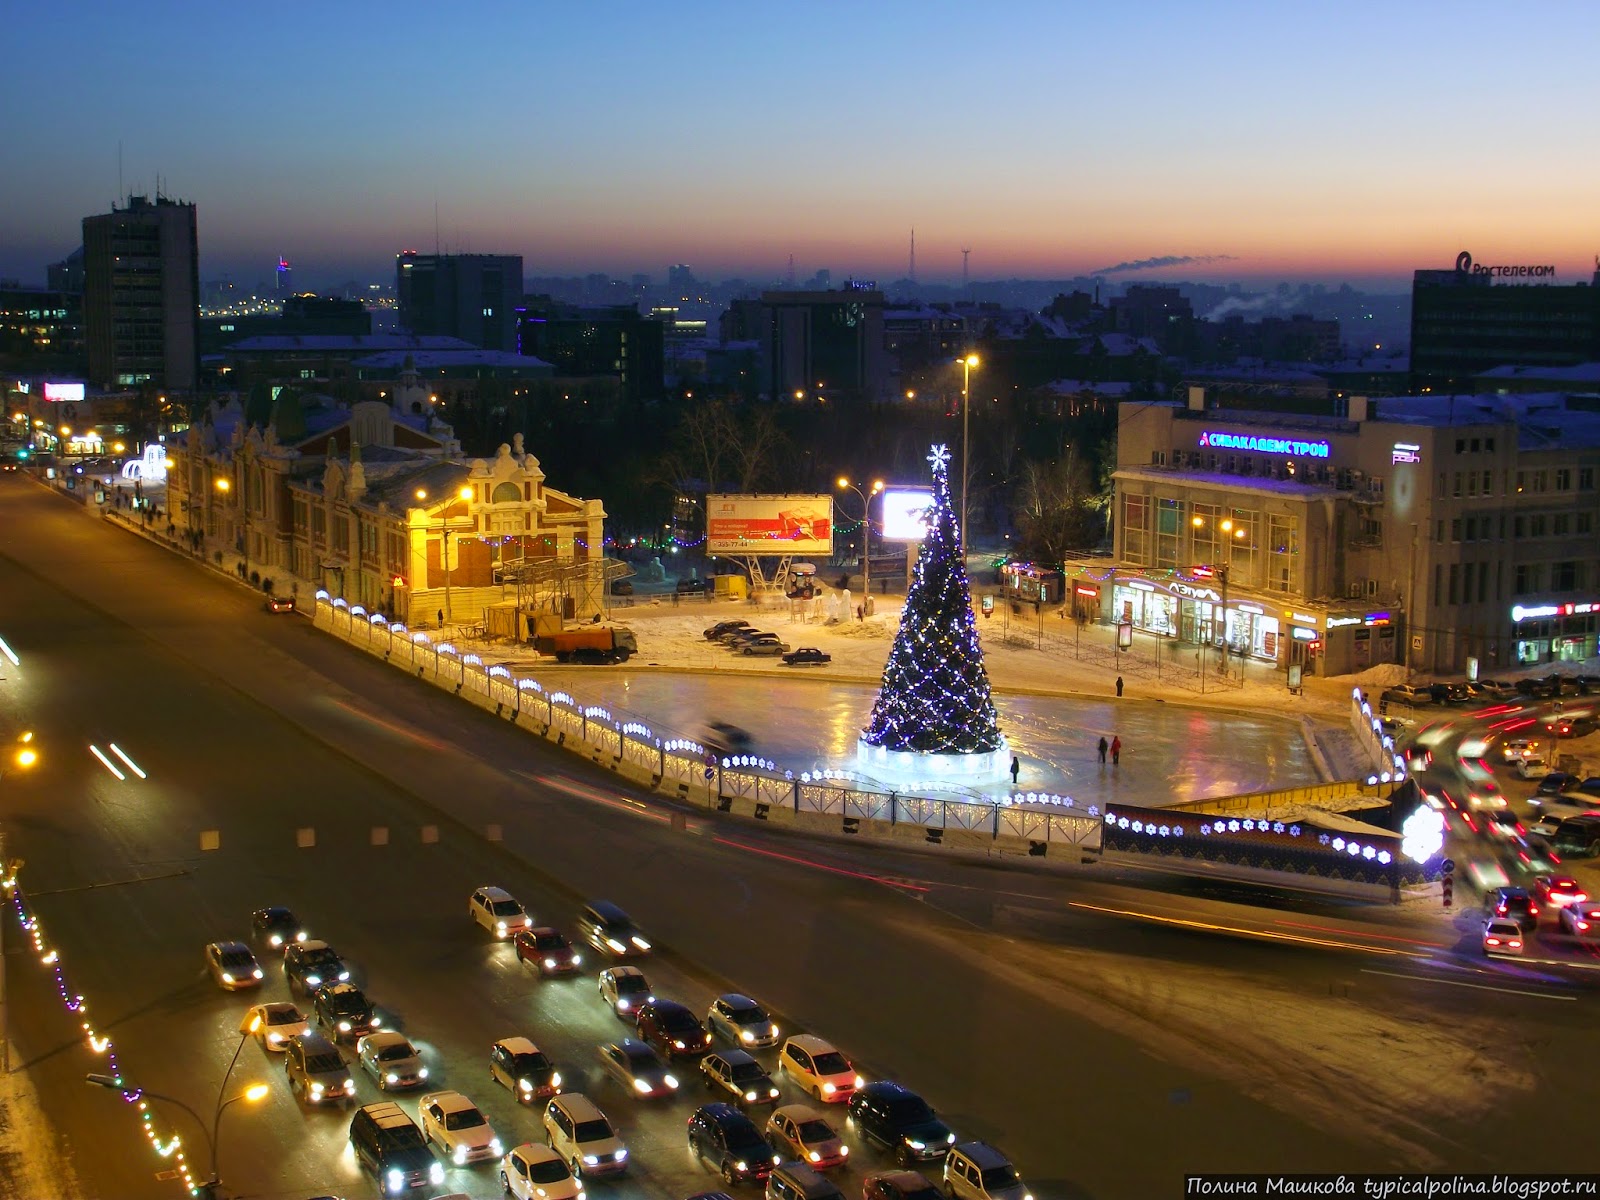 Новая ты новосибирск. Площадь Ленина Новосибирск. Ночной Новосибирск площадь Ленина. Площадь Ленина Новосибирск зимой. Площадь в Новосибирске на новый год.